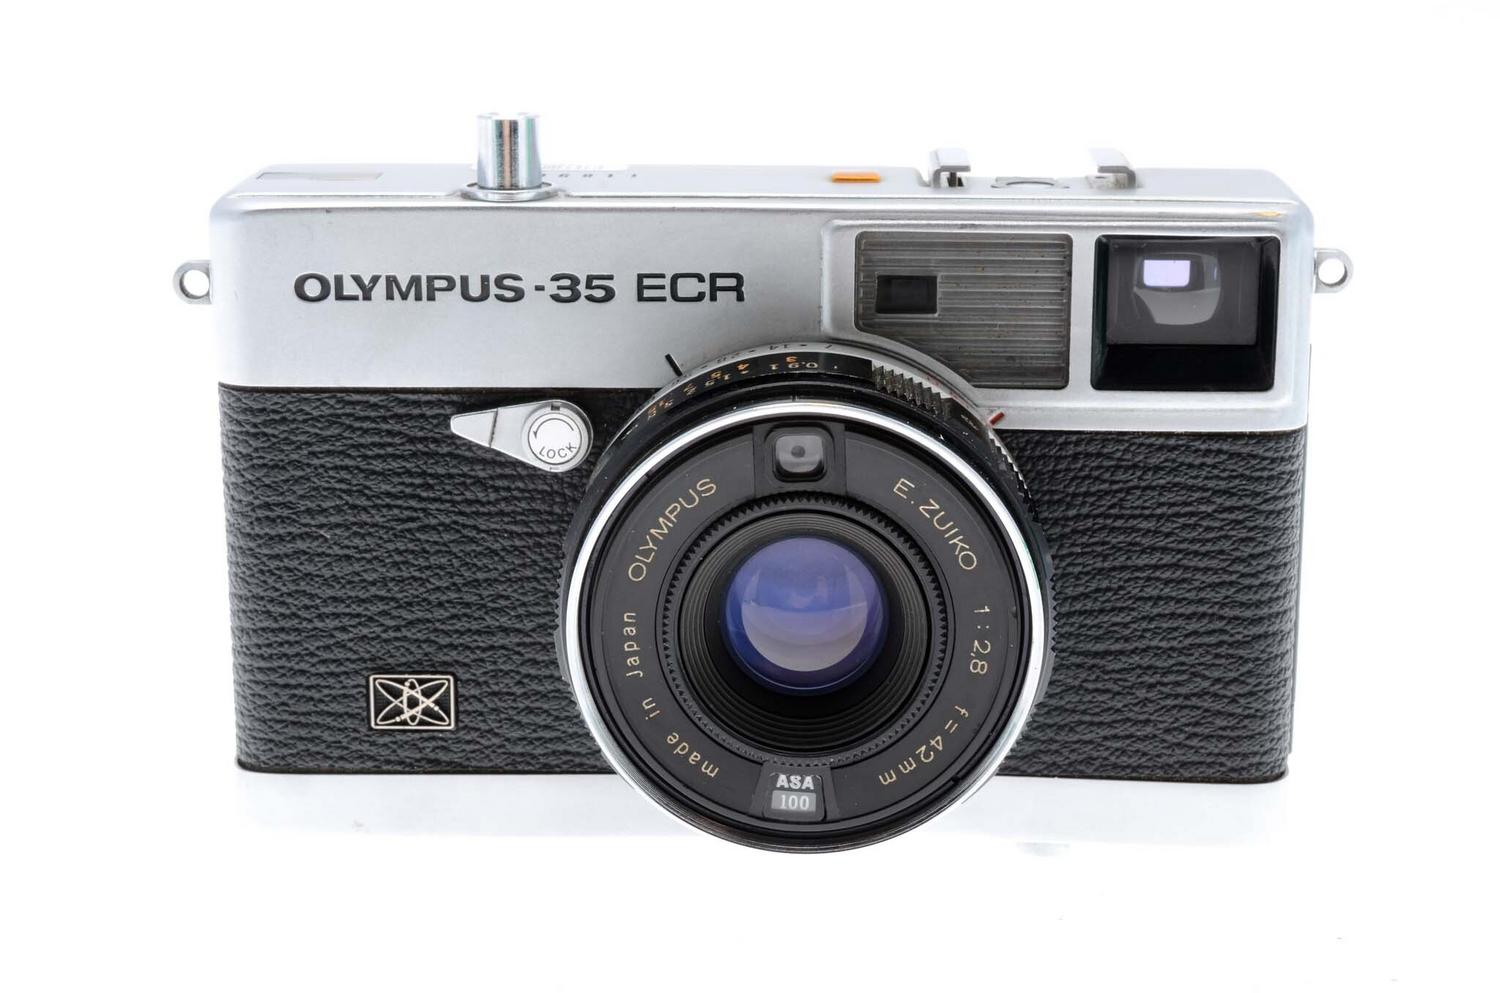 Olympus 35 ECR - Camera